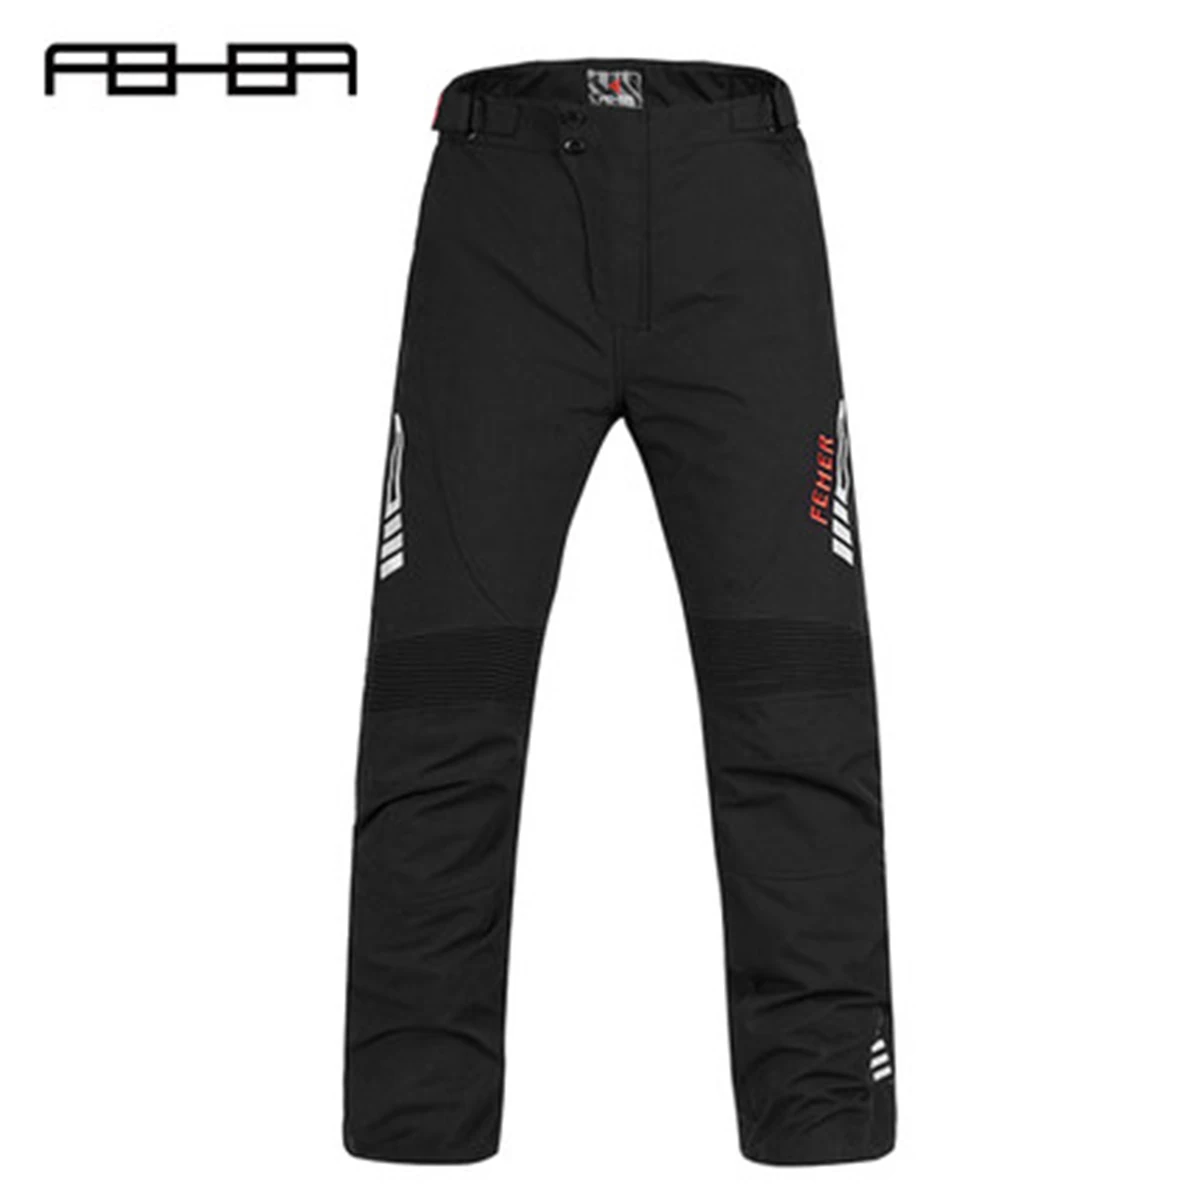 

Мотоциклетные штаны FEHER, зимние мужские мотоциклетные защитные брюки до колена для мотокросса, повседневные брюки со съемной подкладкой